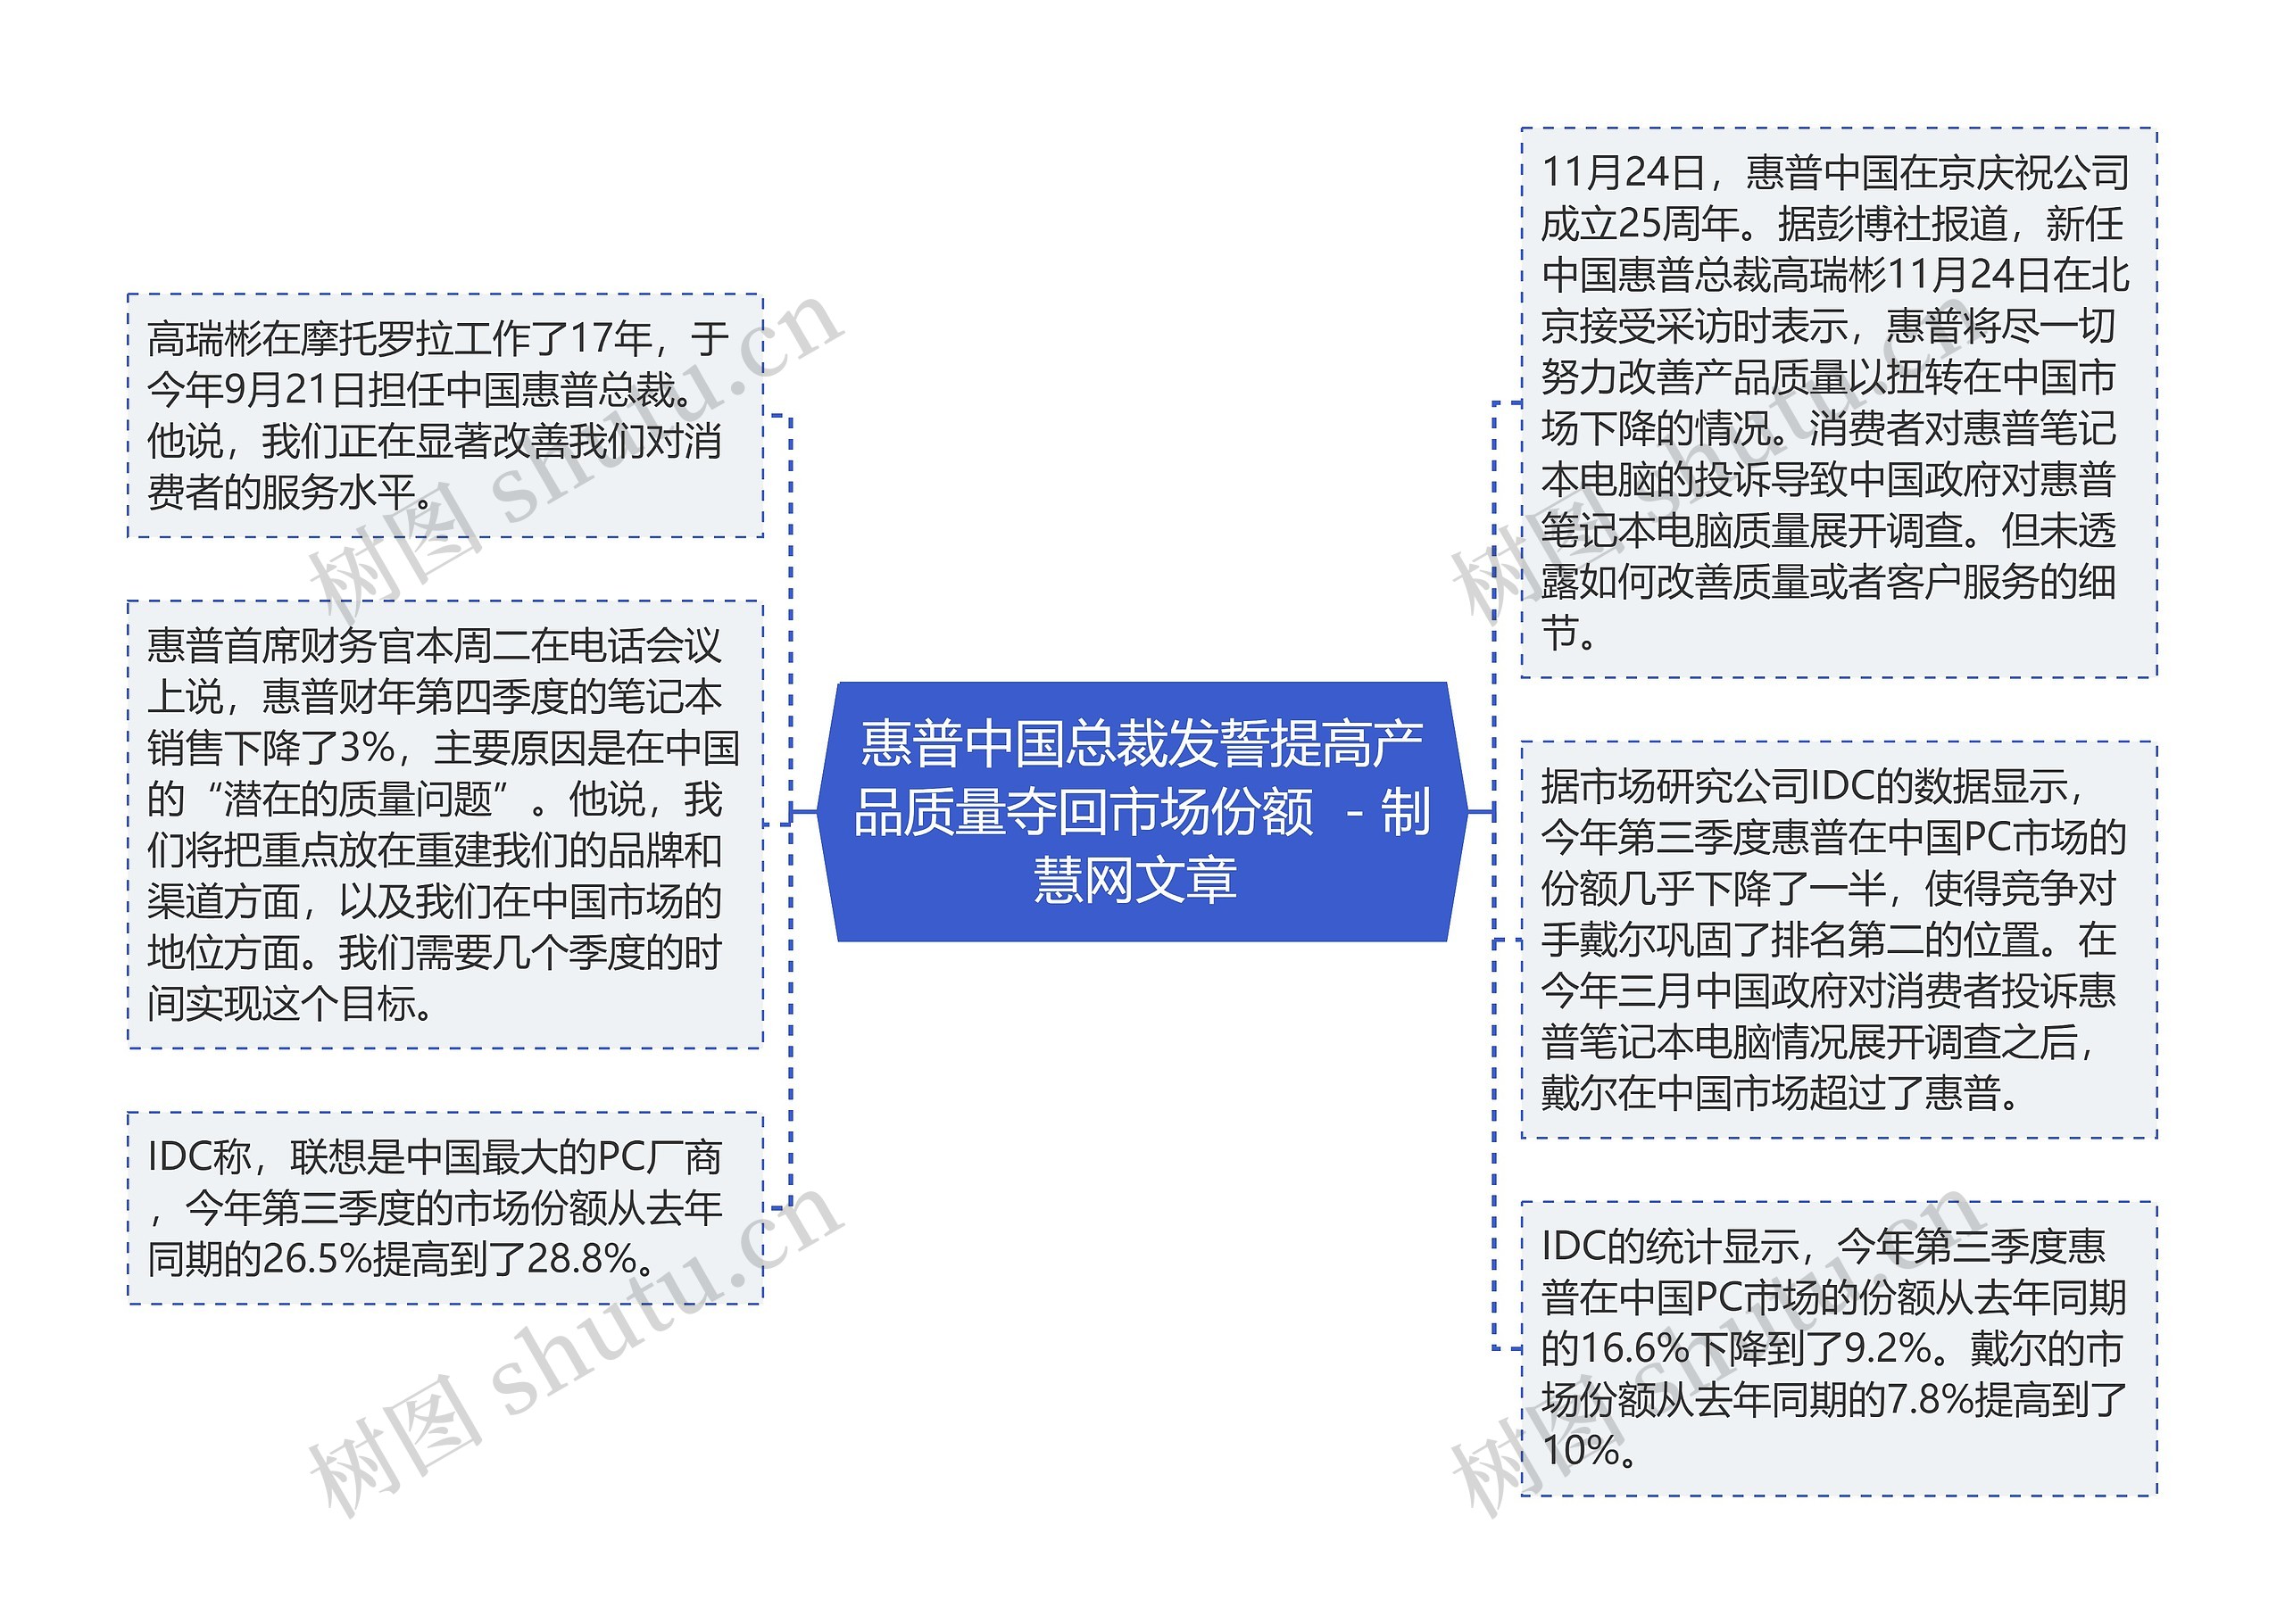 惠普中国总裁发誓提高产品质量夺回市场份额  - 制慧网文章 